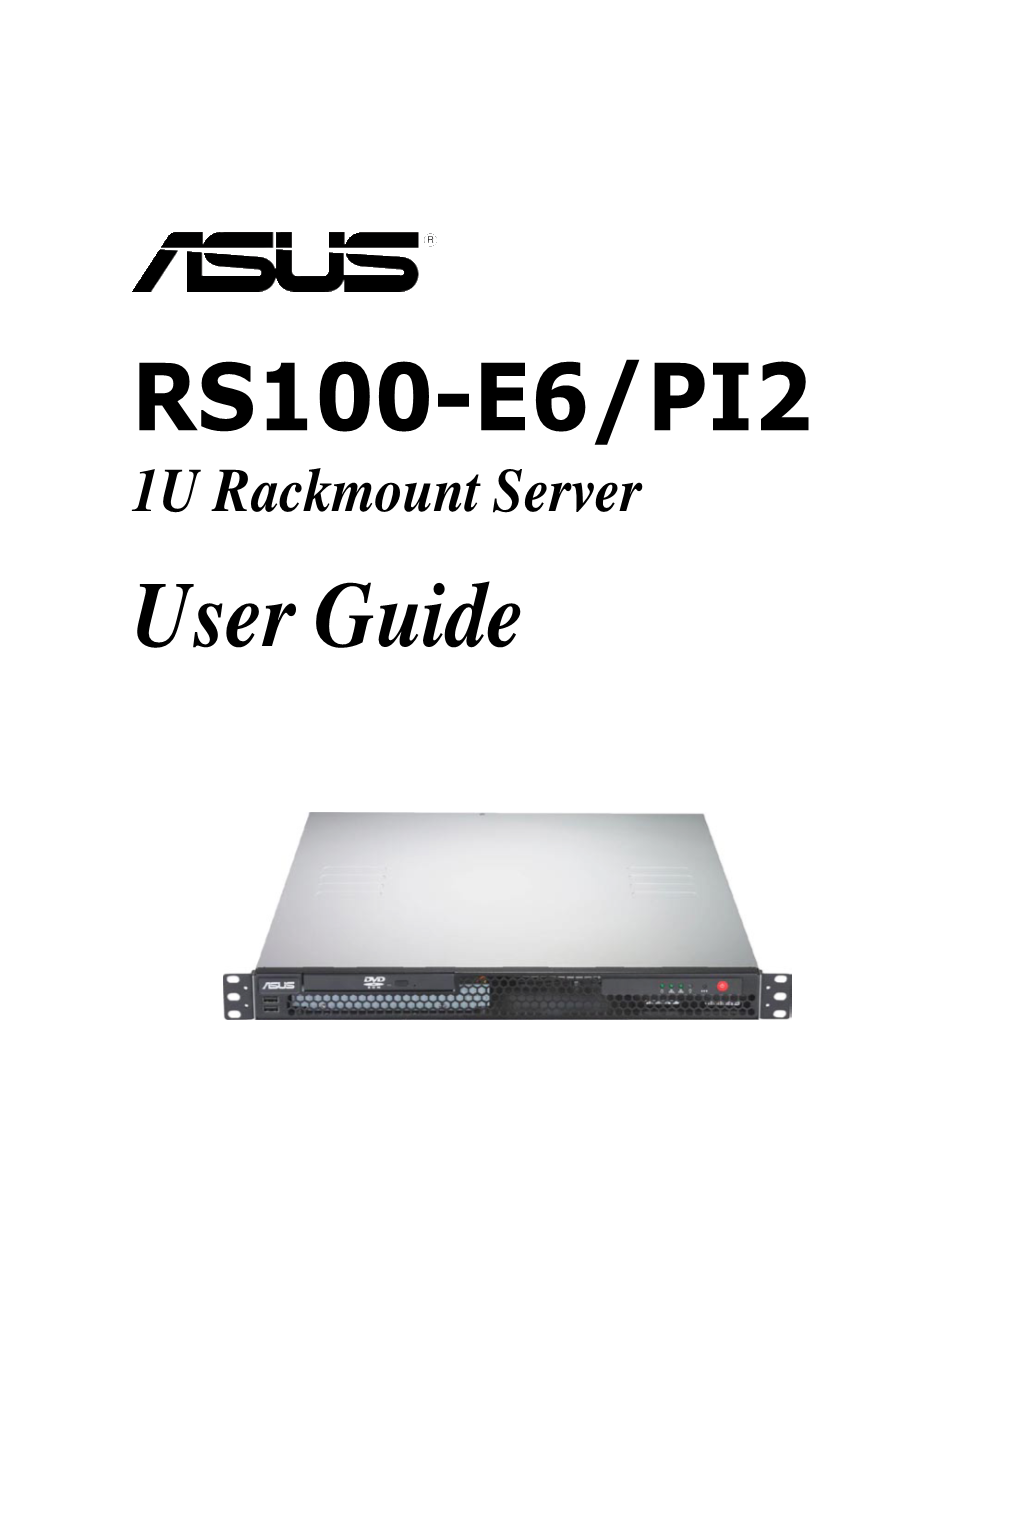 RS100-E6/PI2 User Guide